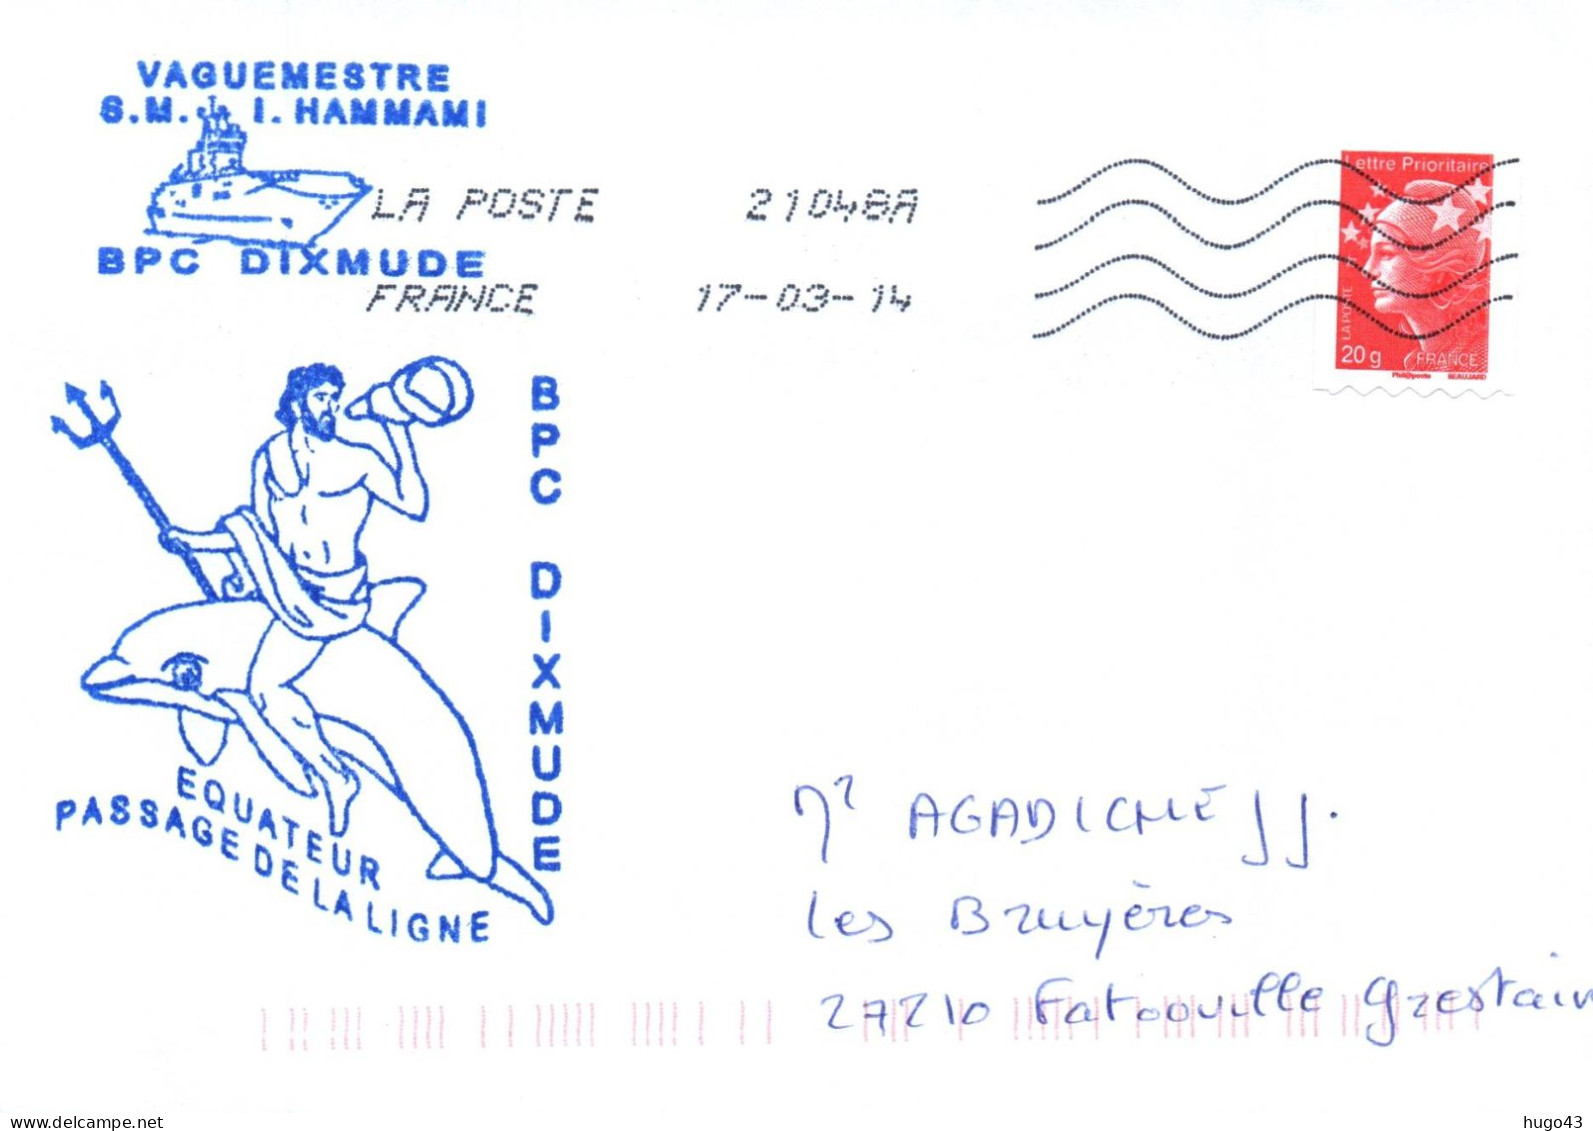 ENVELOPPE AVEC CACHET B.P.C. DIXMUDE - EQUATEUR - PASSAGE DE LA LIGNE - LE 17/03/14 - Naval Post